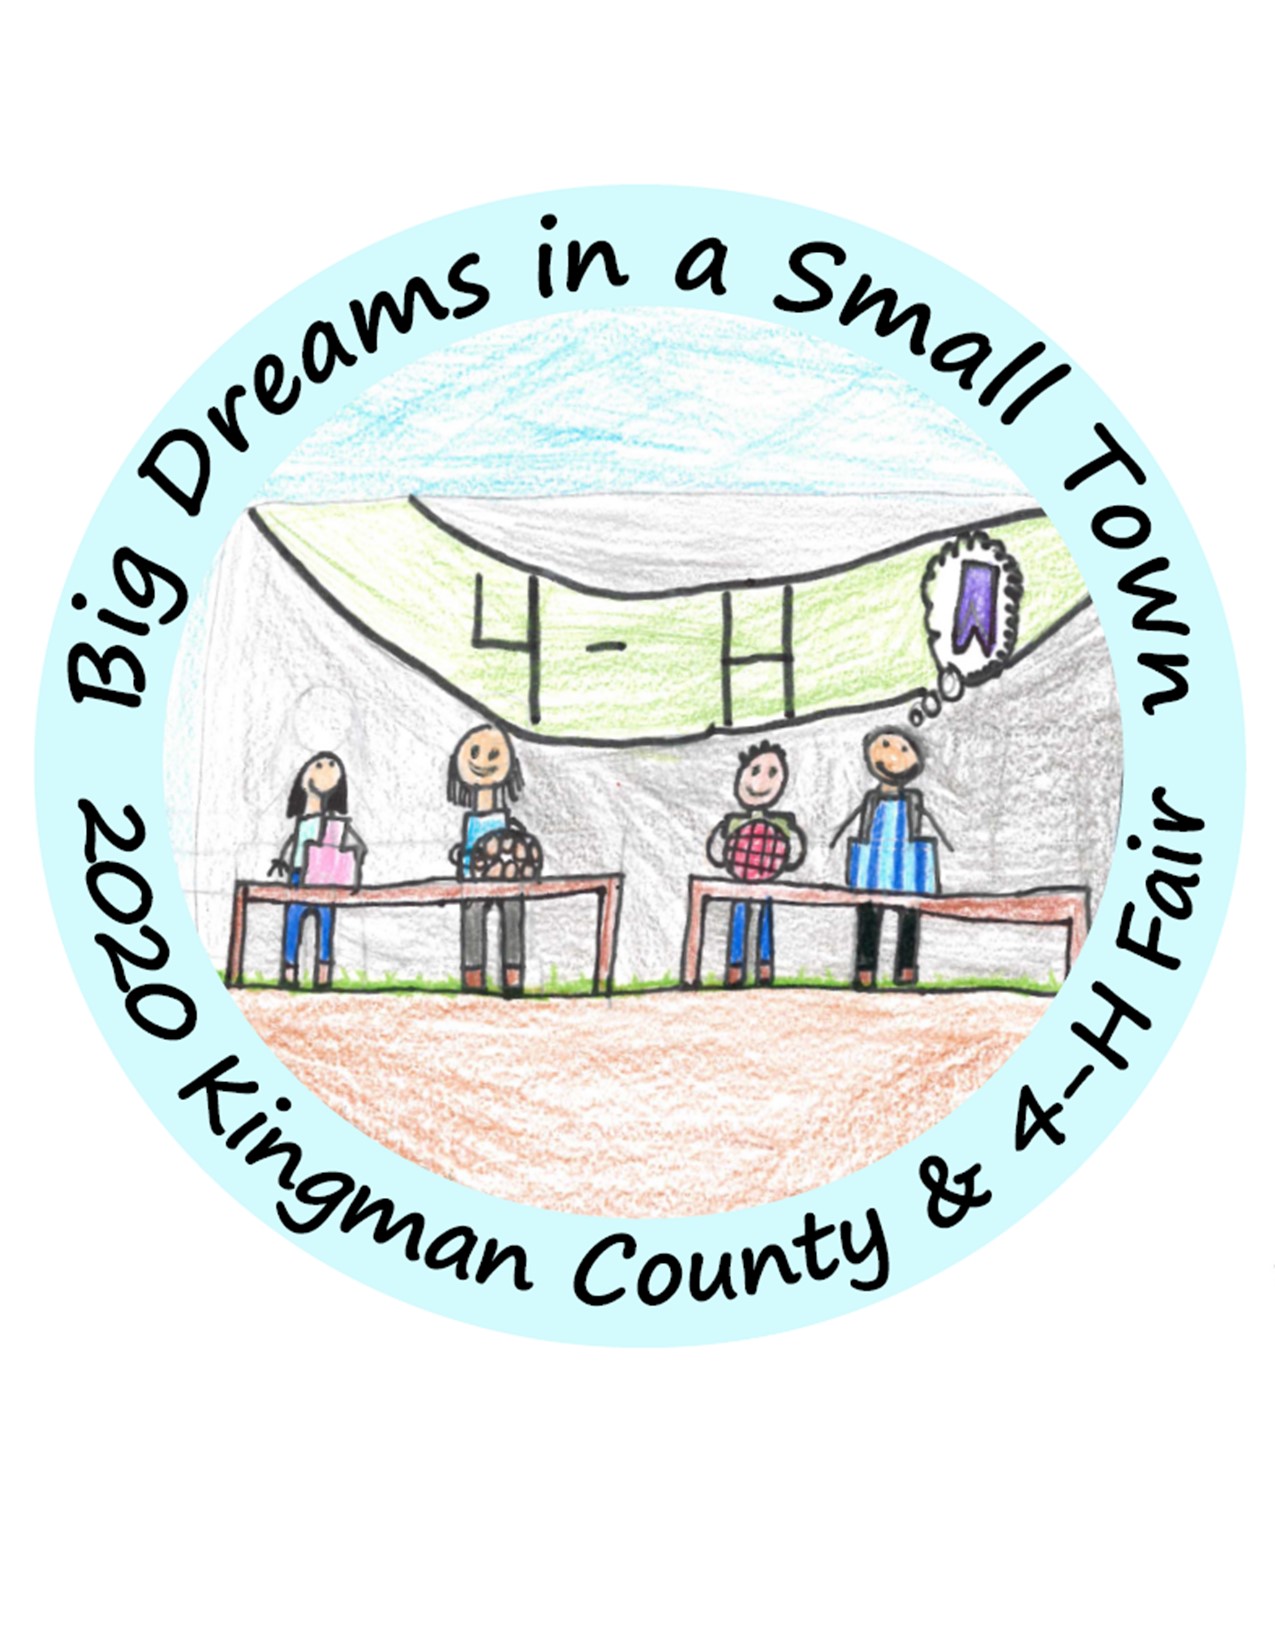 County Fair Kingman County